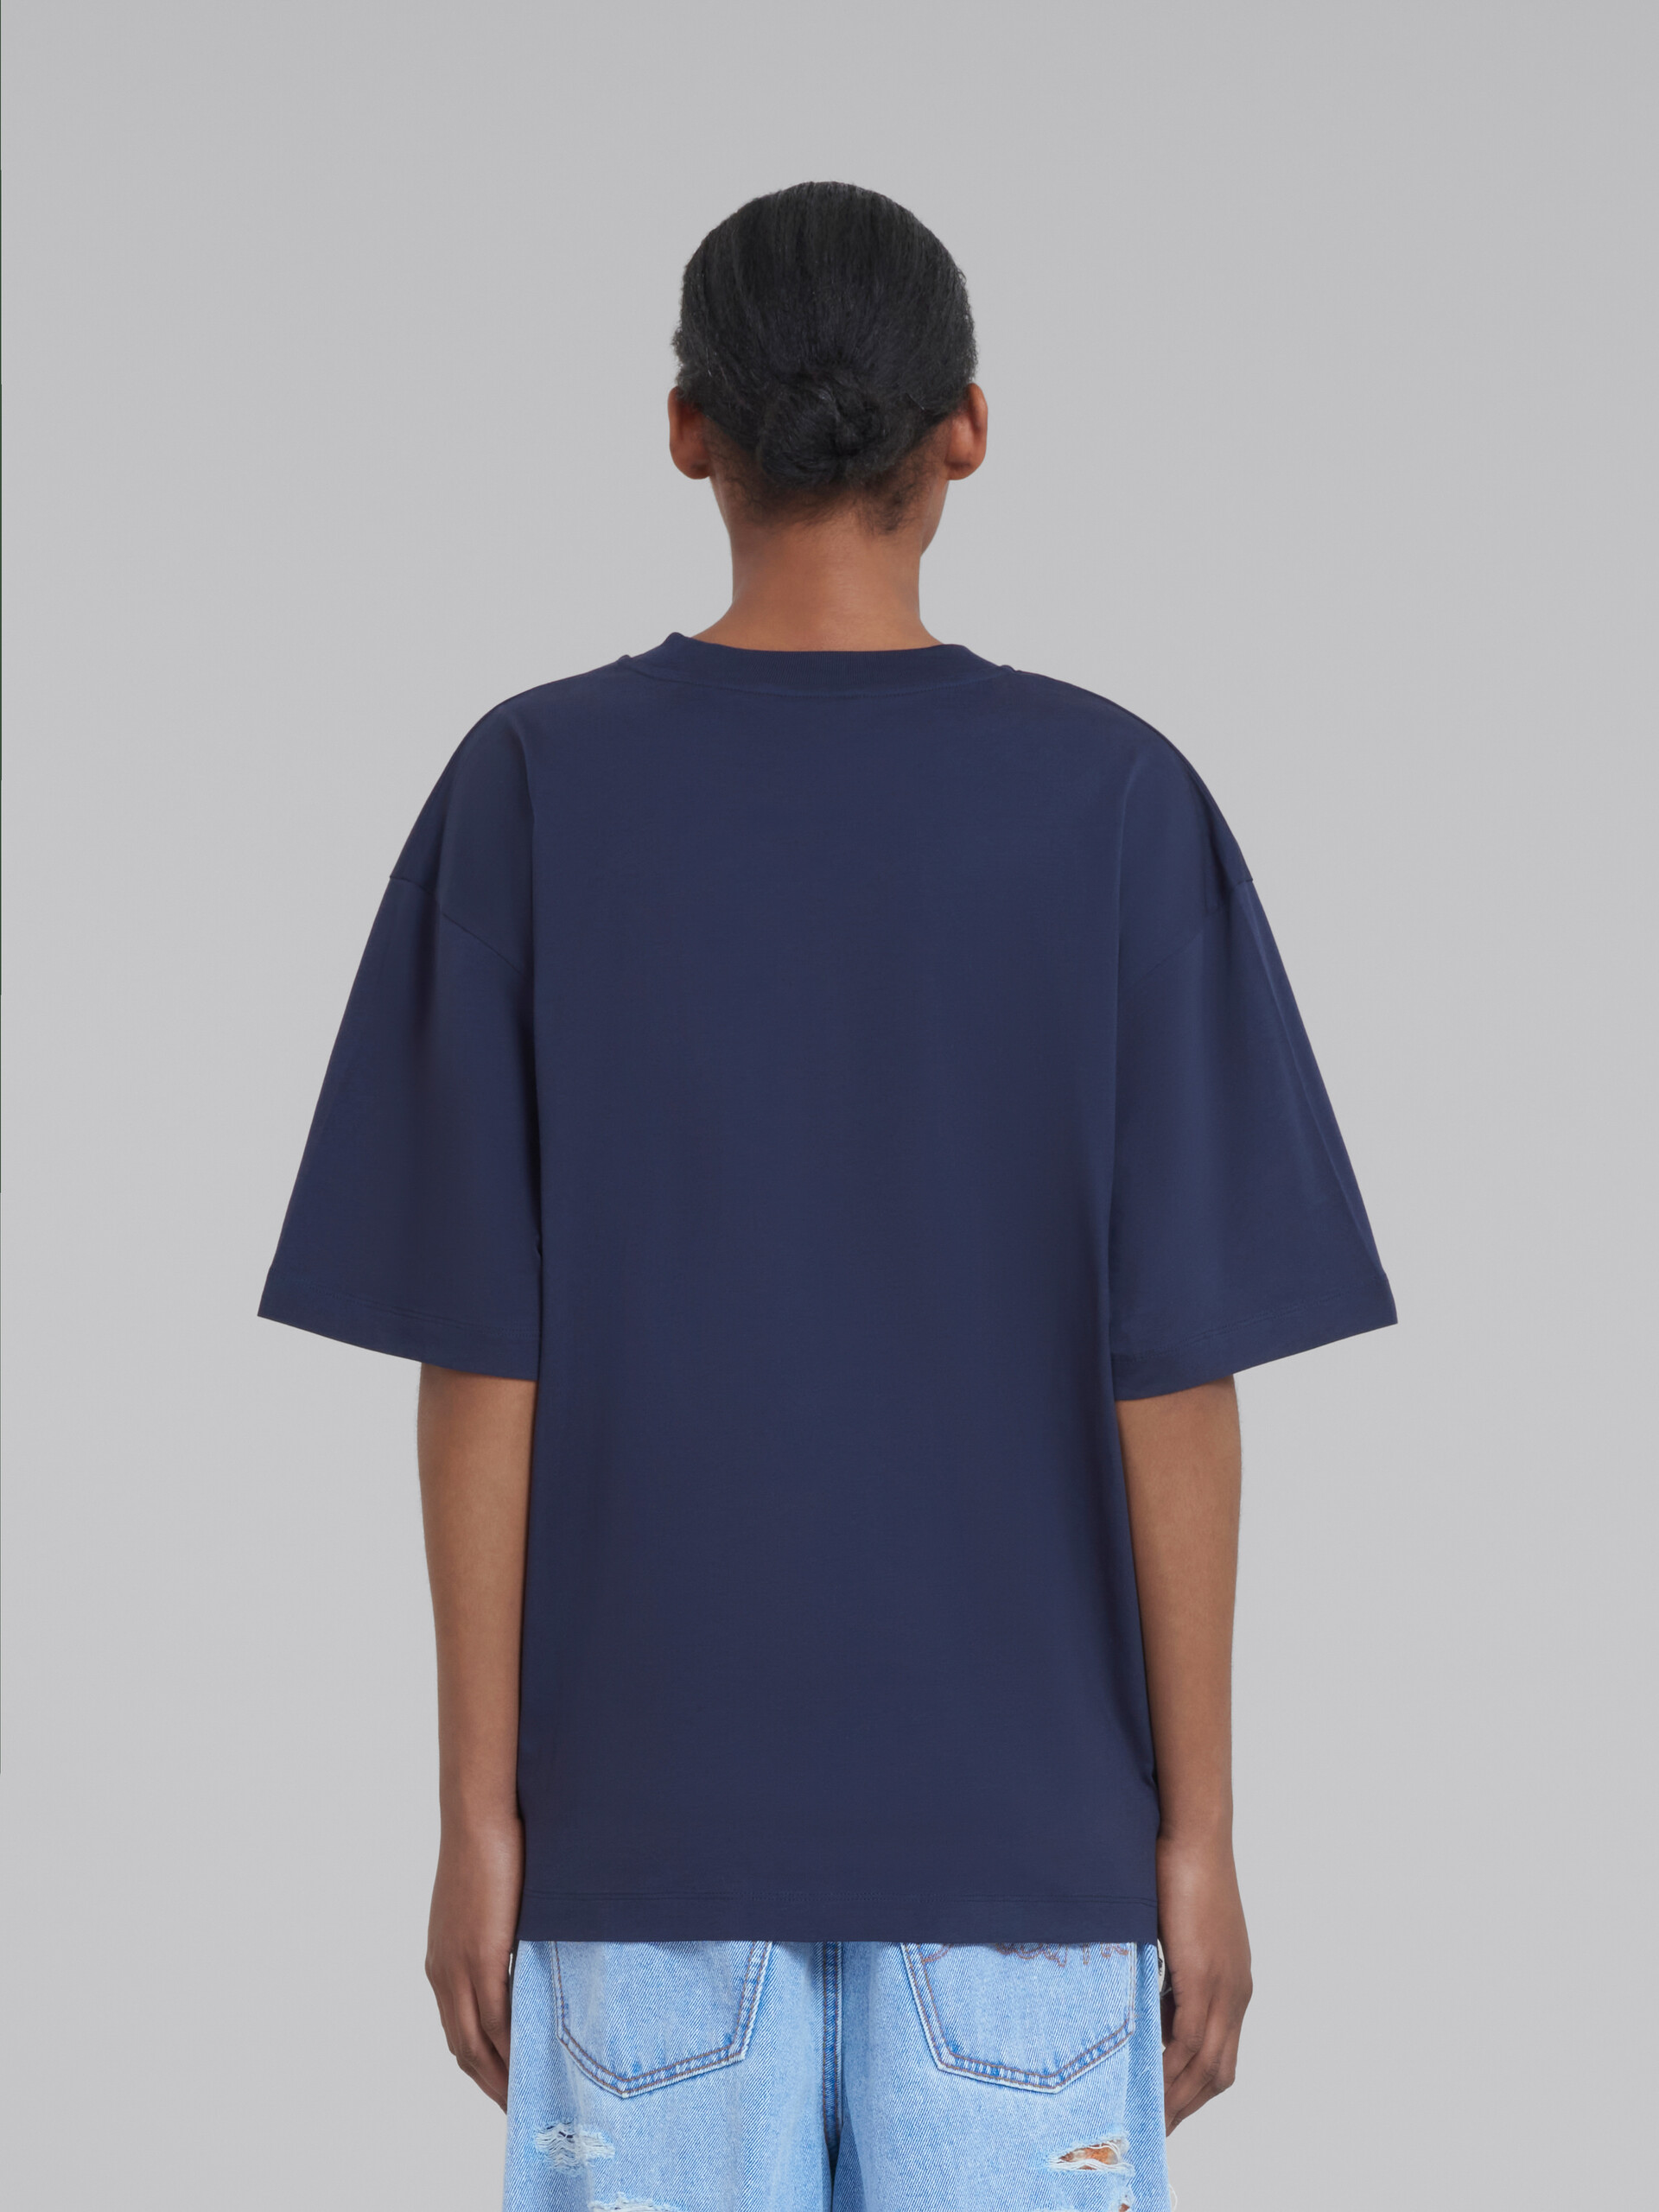 Blaues T-Shirt aus Bio-Baumwolle mit | Logo Marni